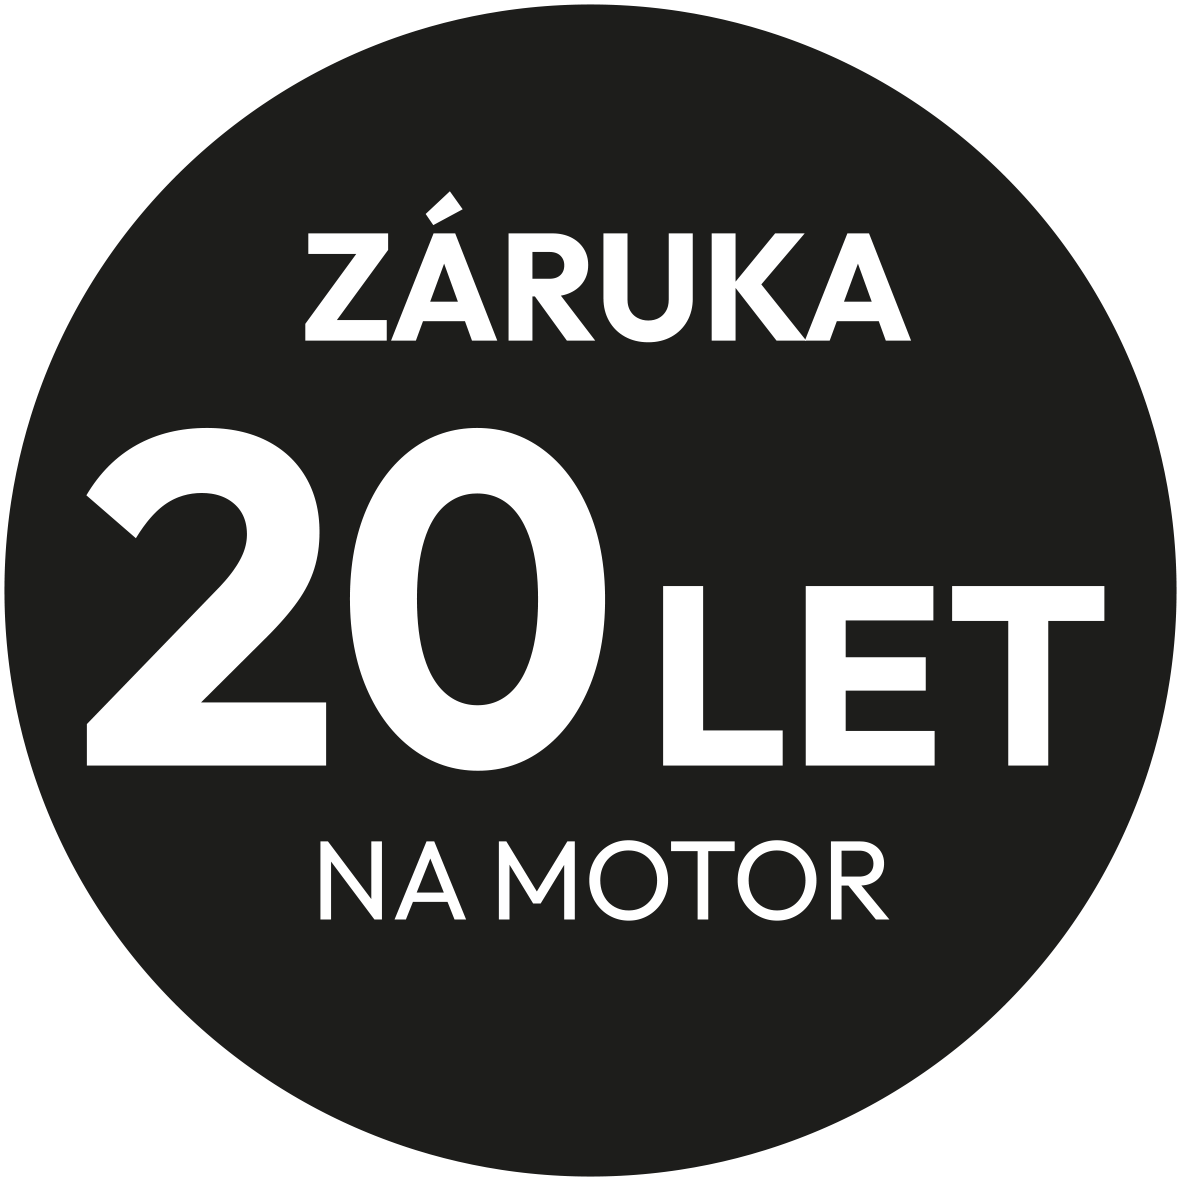 zaruka-20-let-motor